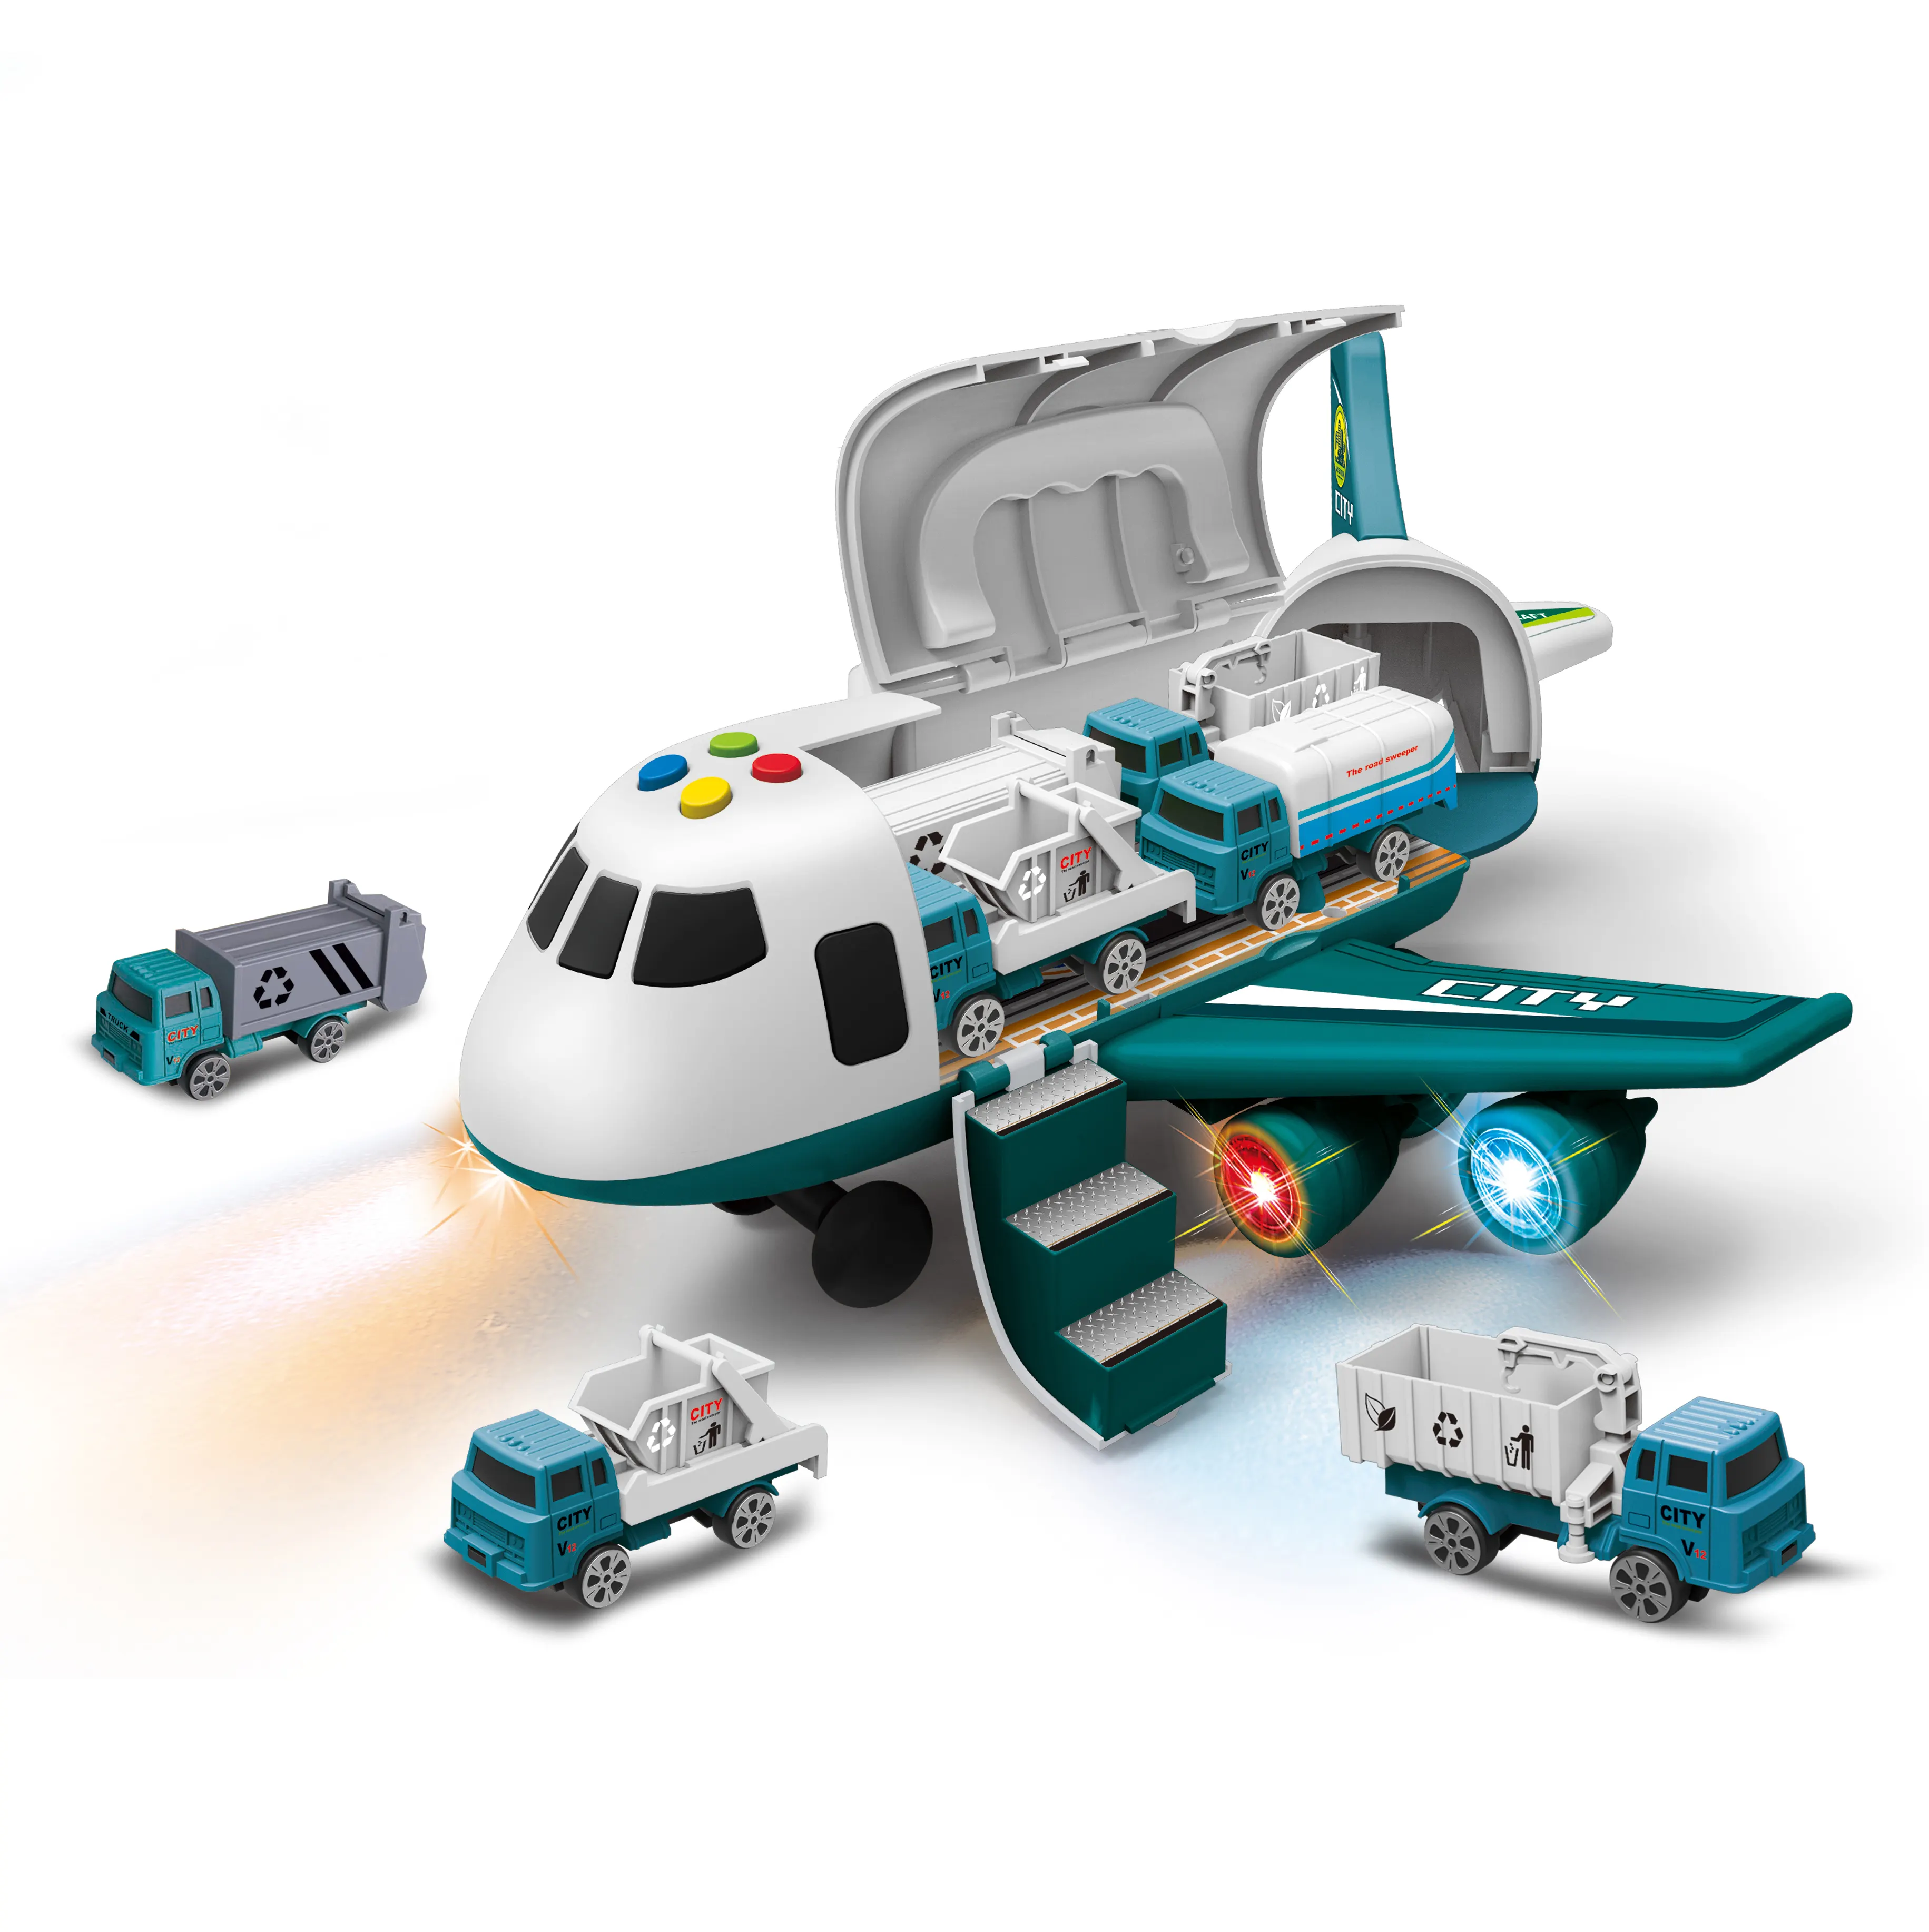 Dowellin aereo giocattoli simulazione auto giocattolo per bambini aeroplani elettrici aerei passeggeri di grandi dimensioni